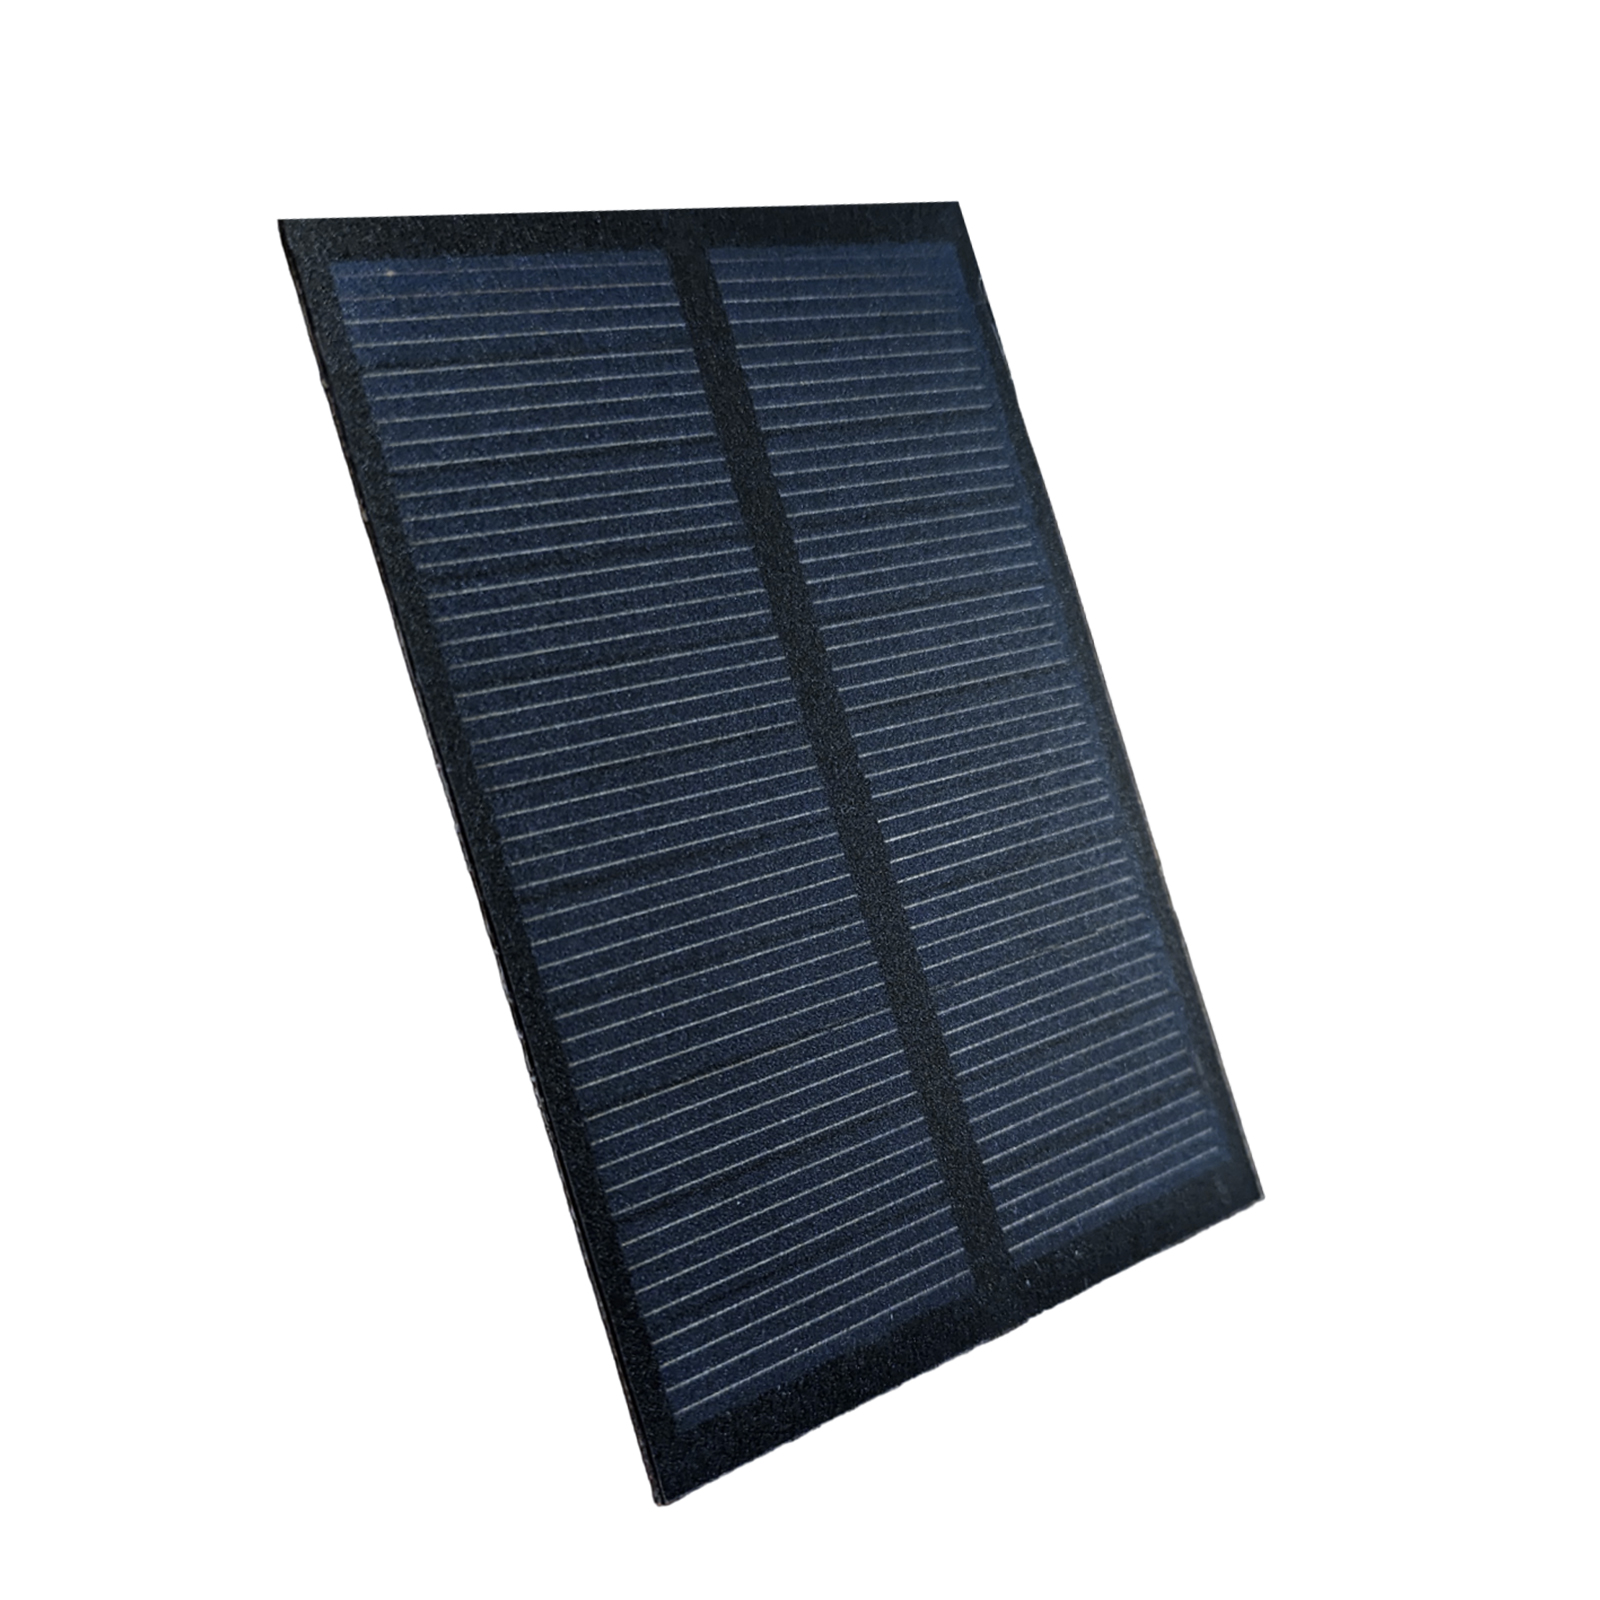 Miniaturní solární panel 57x85mm 5,5V 100mA